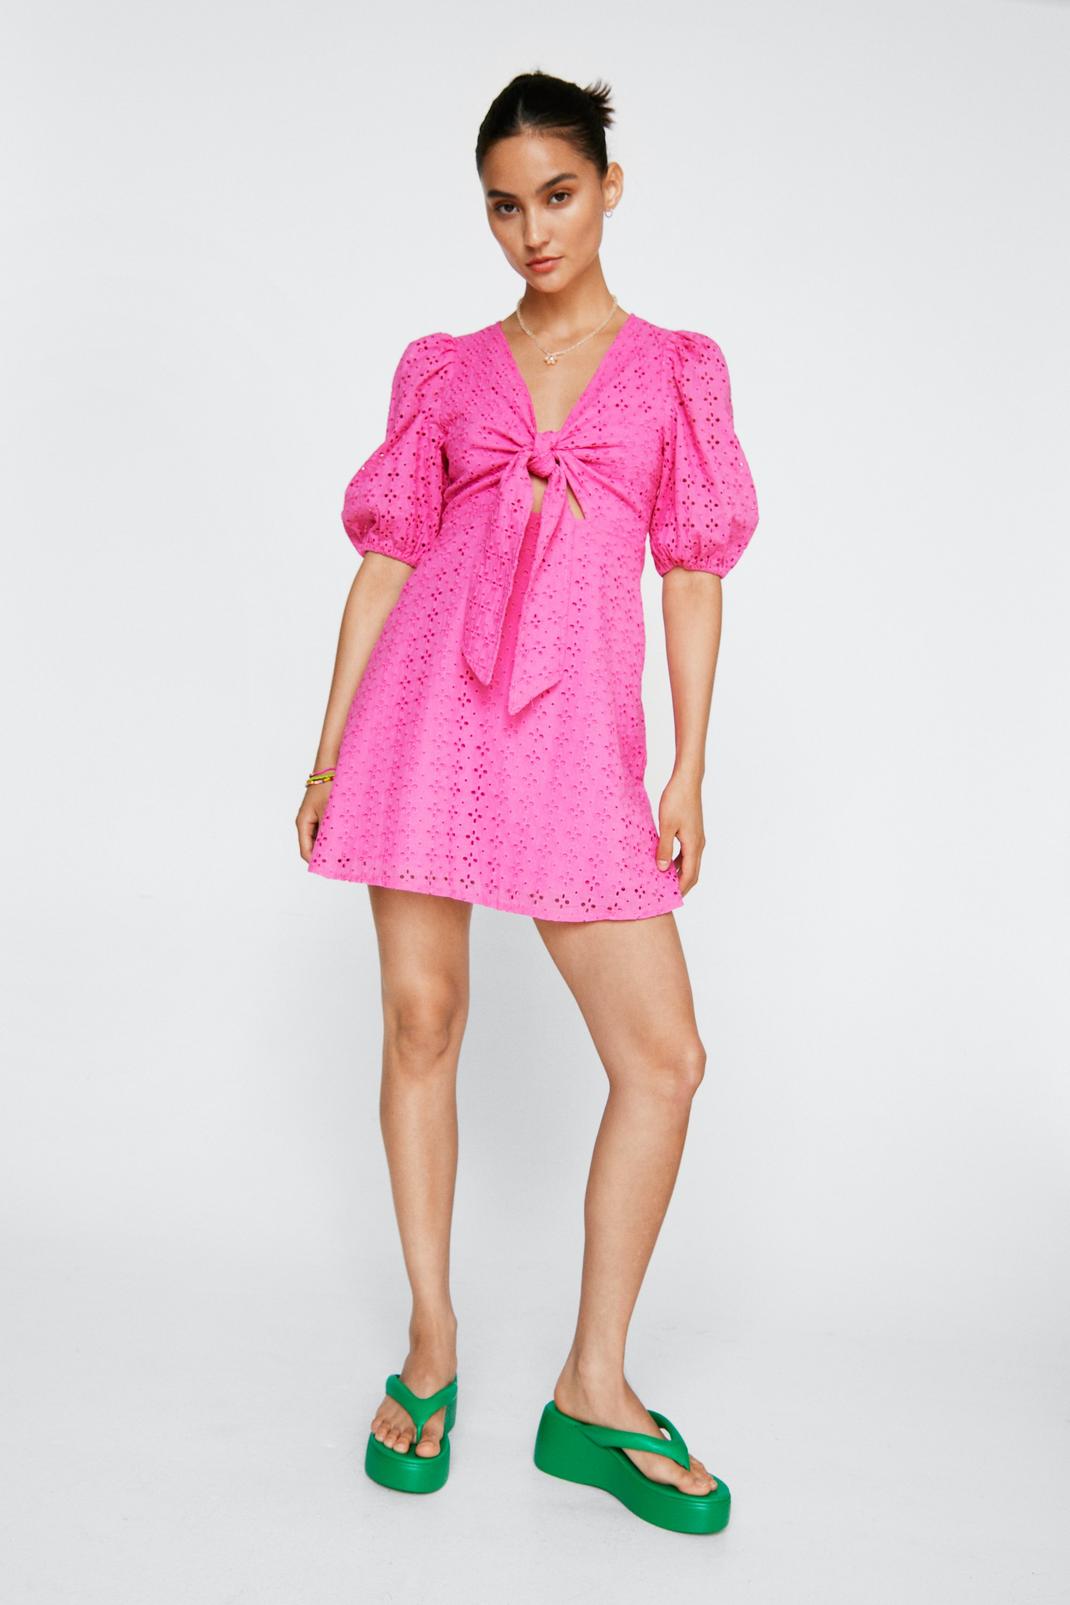 Petite - Mini robe en broderie avec noeud, Hot pink image number 1